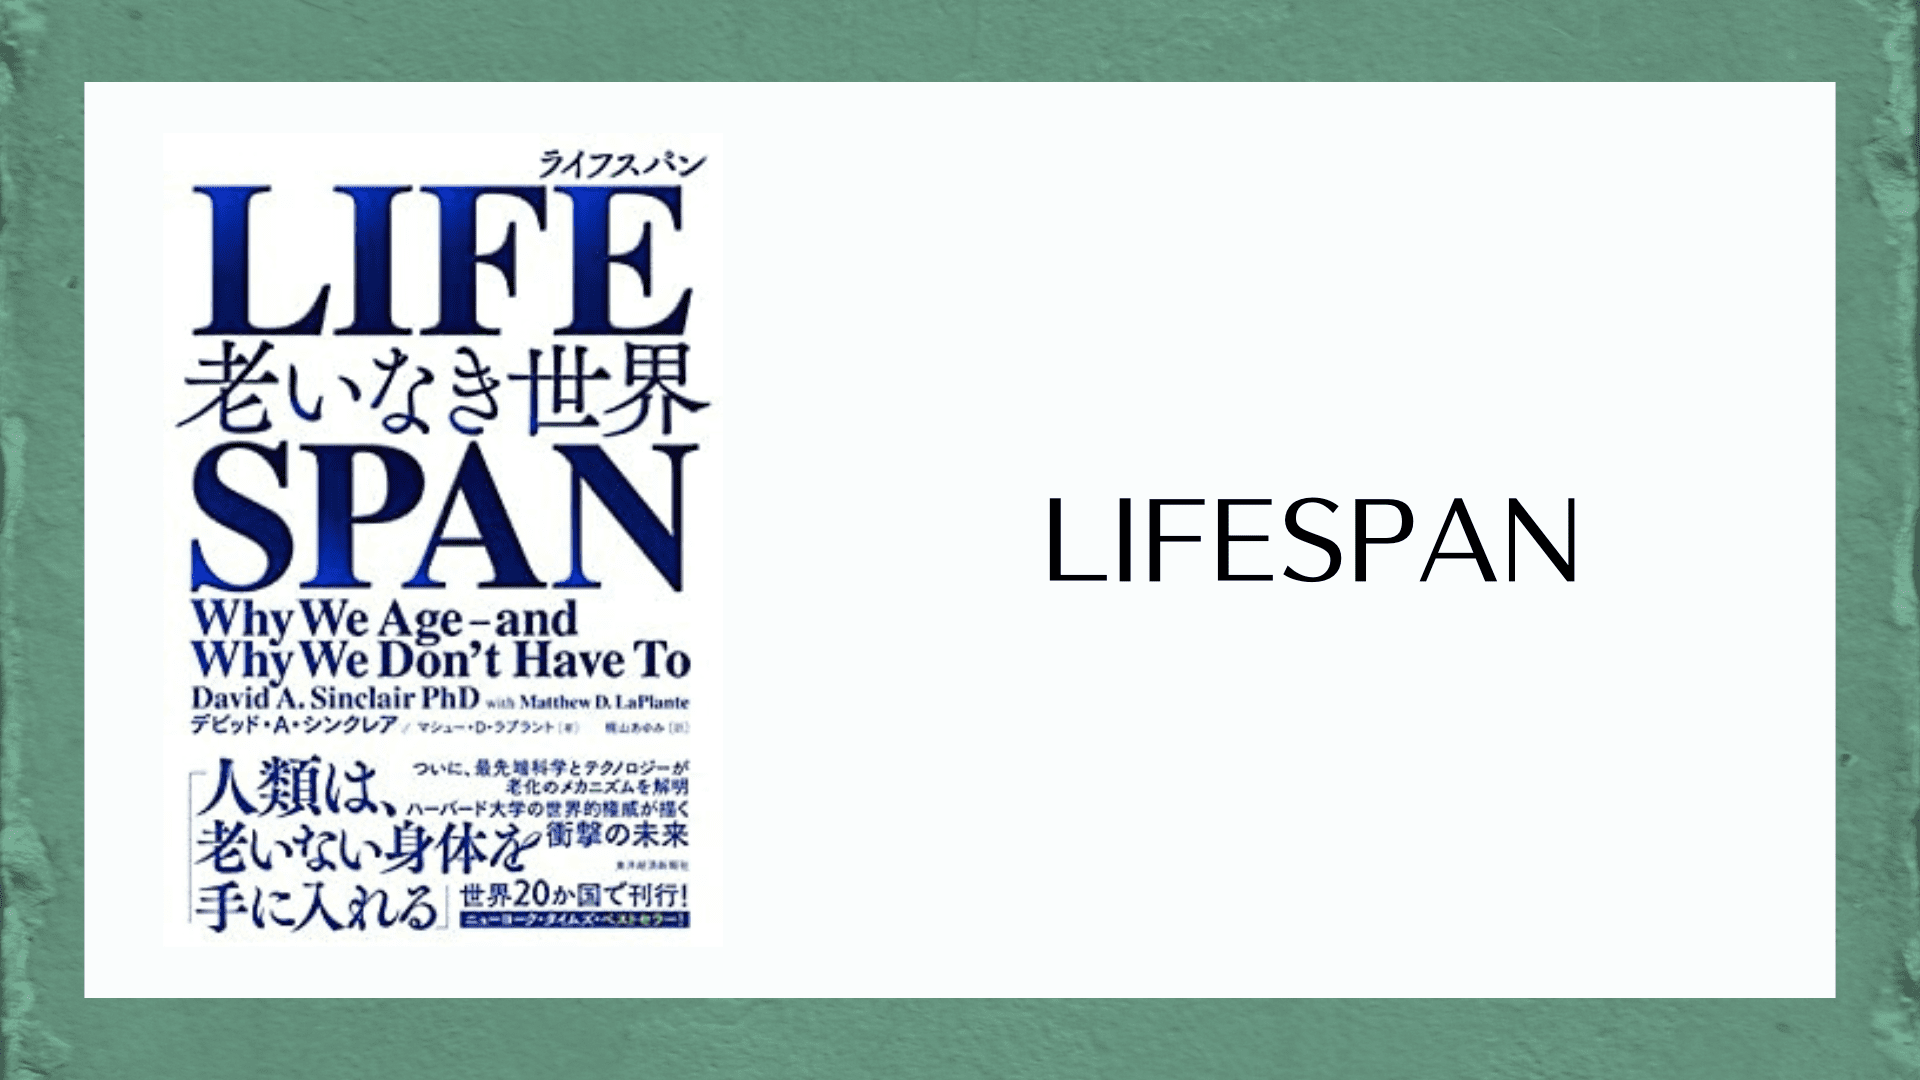 LIFESPAN(ライフスパン): 老いなき世界